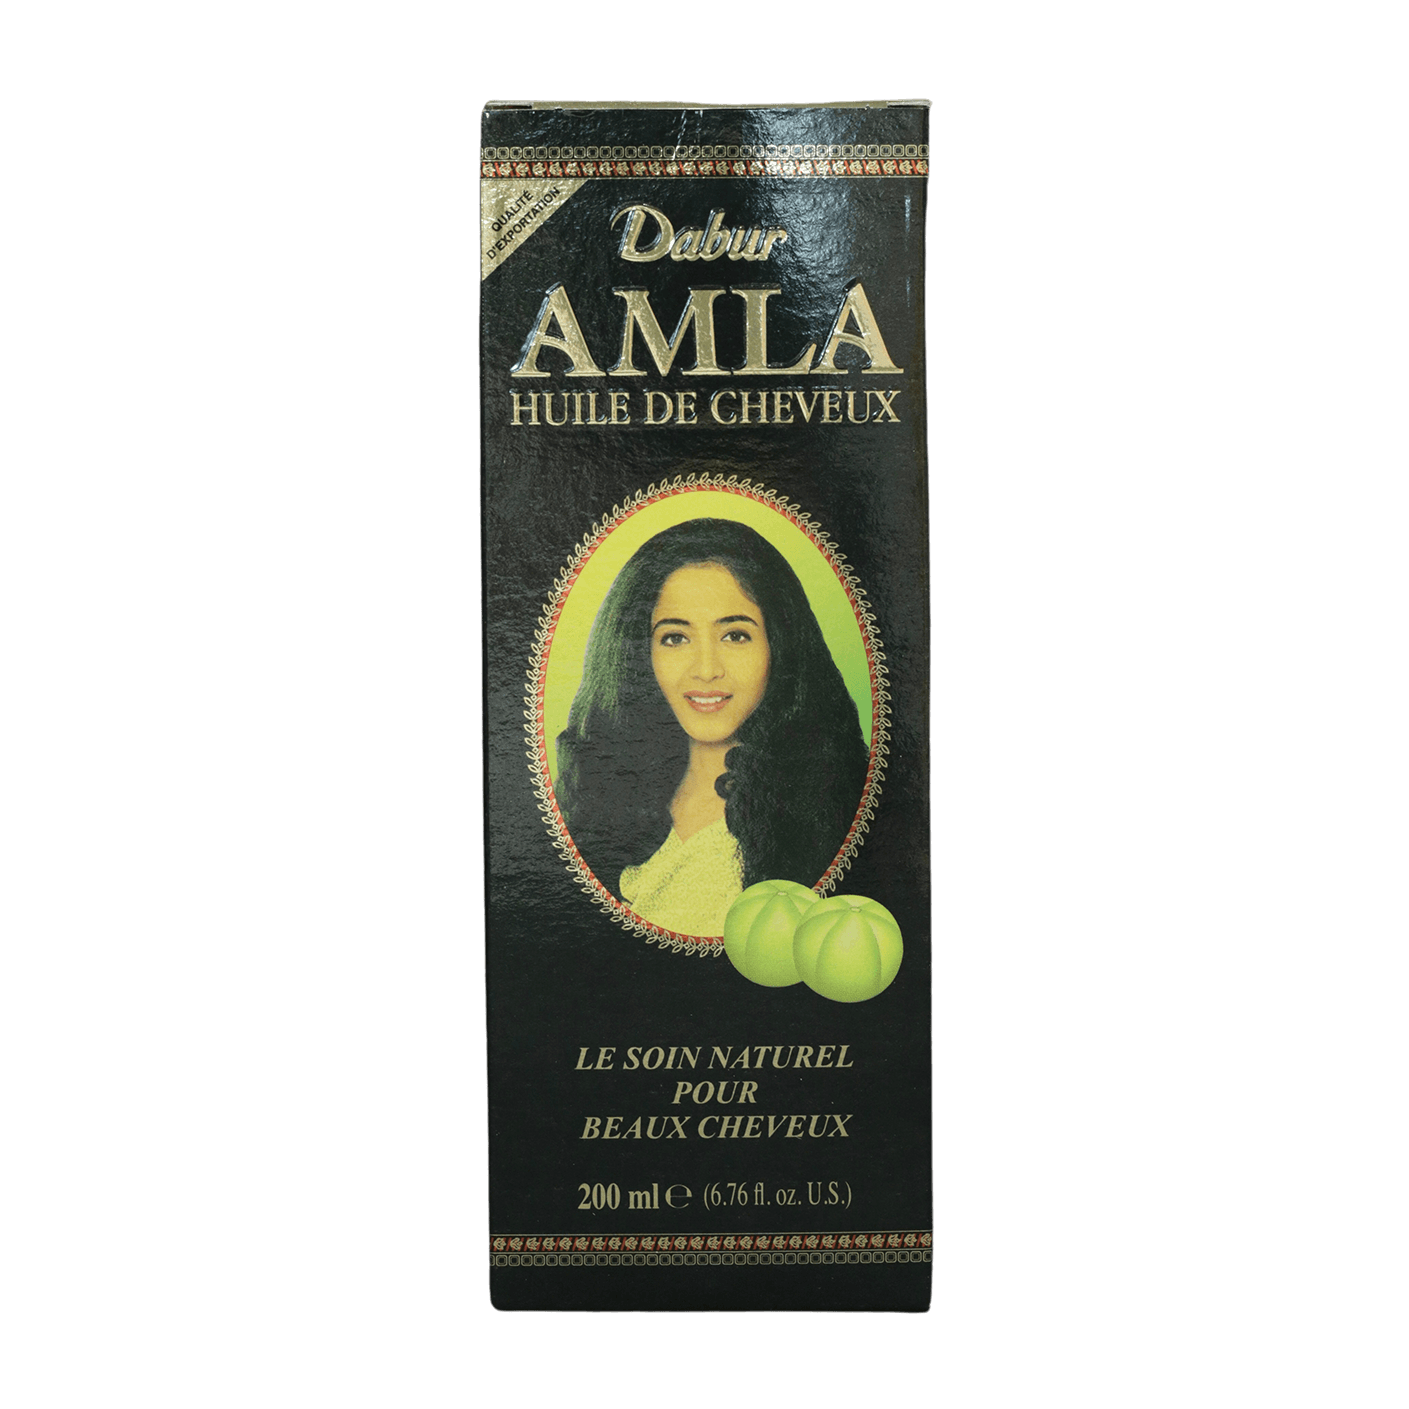 Dabur Amla Jasmine Hair Oil huile capillaire 200ml